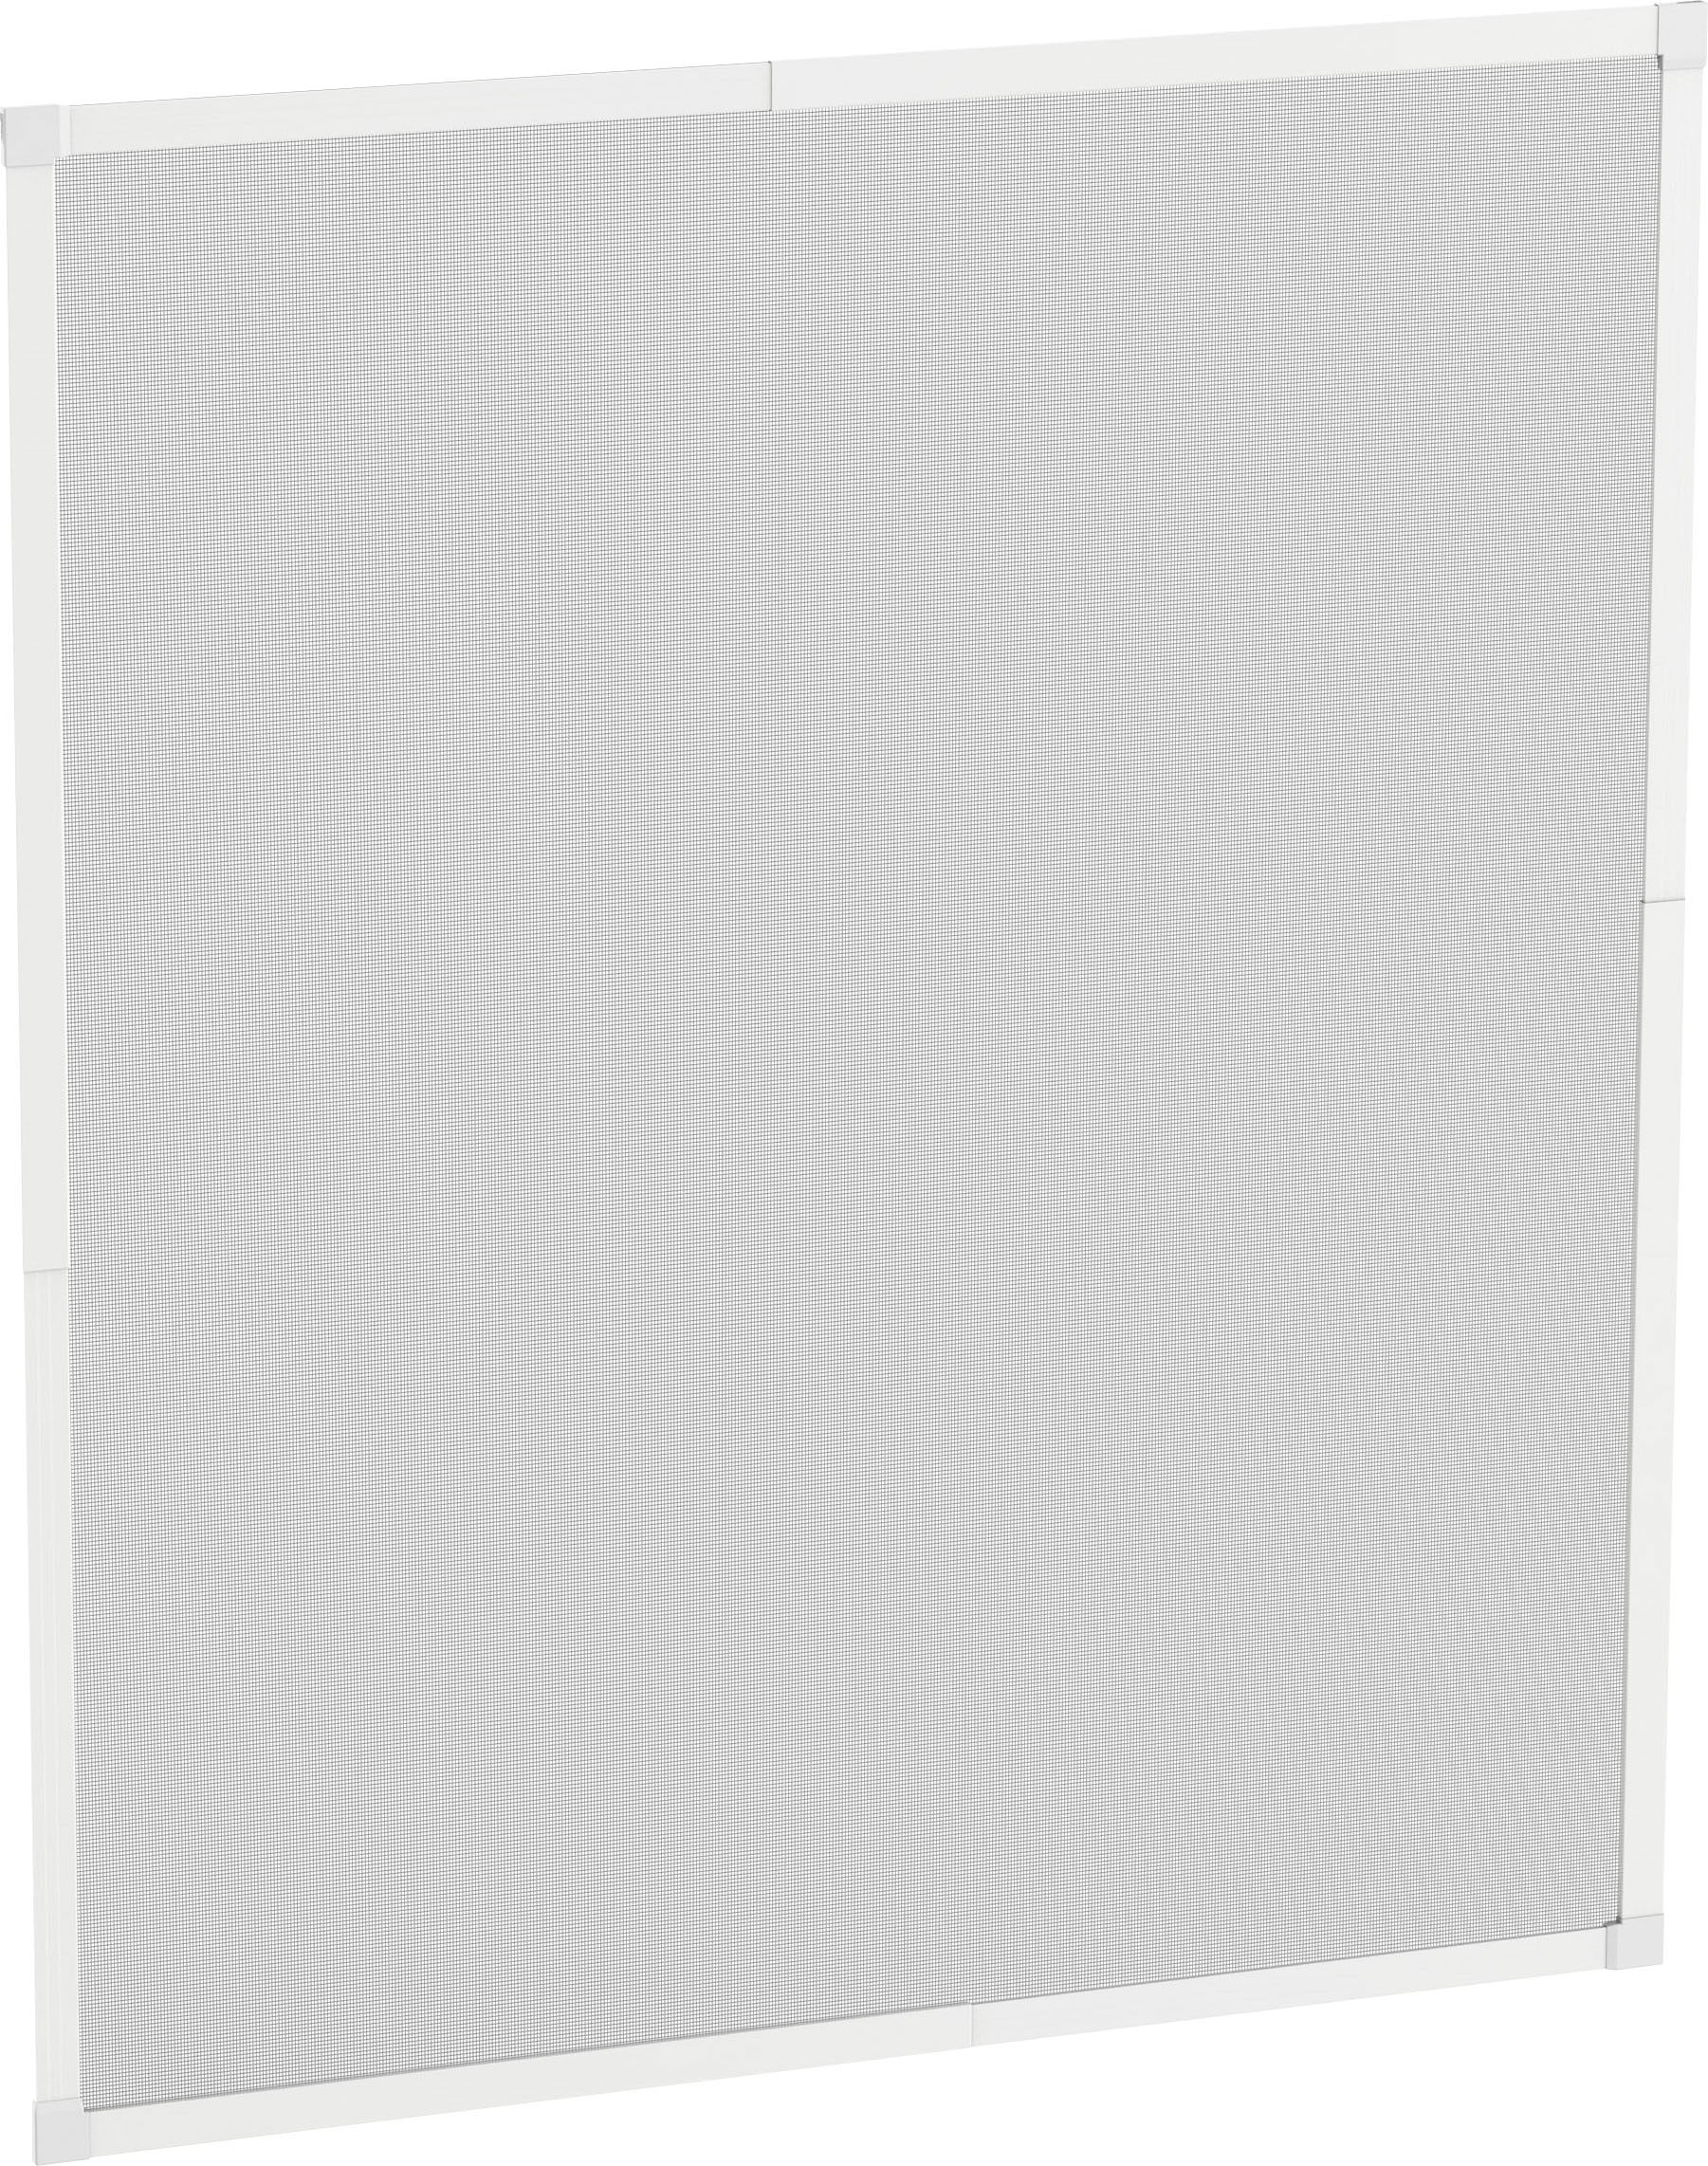 hecht international Insektenschutz-Fensterrahmen "START", weiß/anthrazit, BxH: 120x140 cm